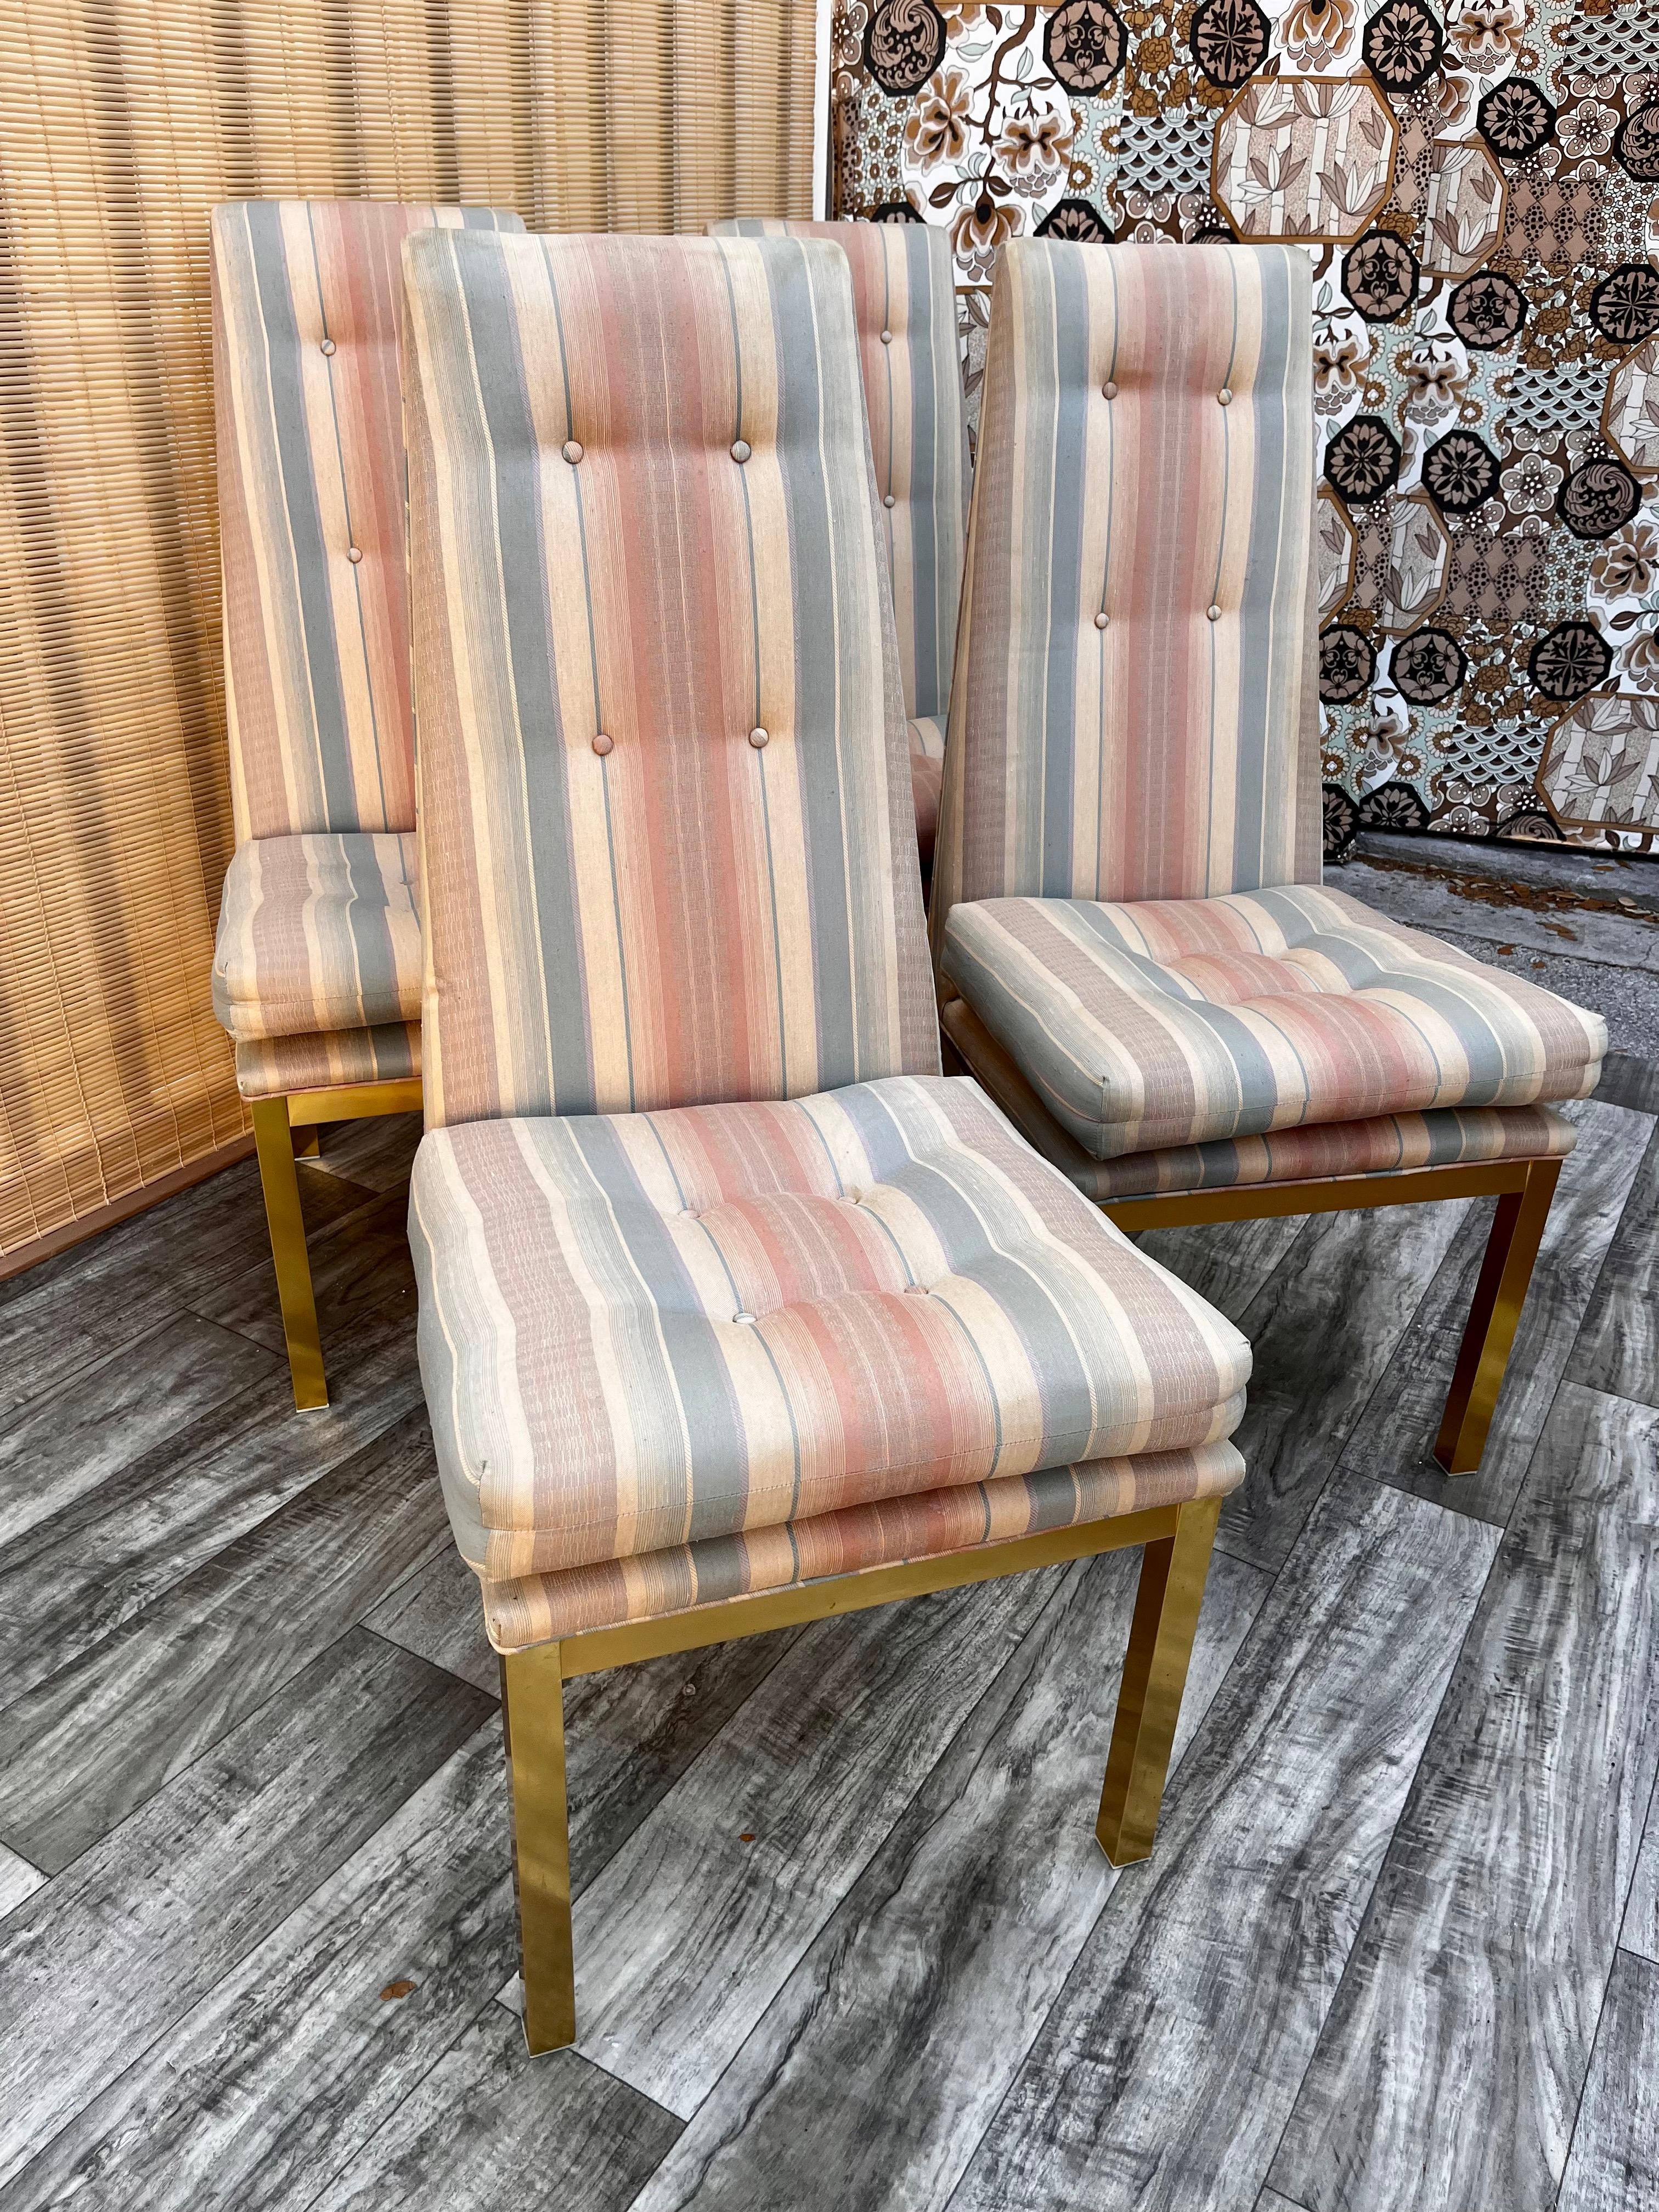 Ensemble de quatre chaises de salle à manger Vintage By Mid Century Modern tapissées dans le style d'Adrain Pearsall. Vers les années 60.
Ce modèle présente un dossier haut typique de la modernité du milieu du siècle, avec un rembourrage touffeté à